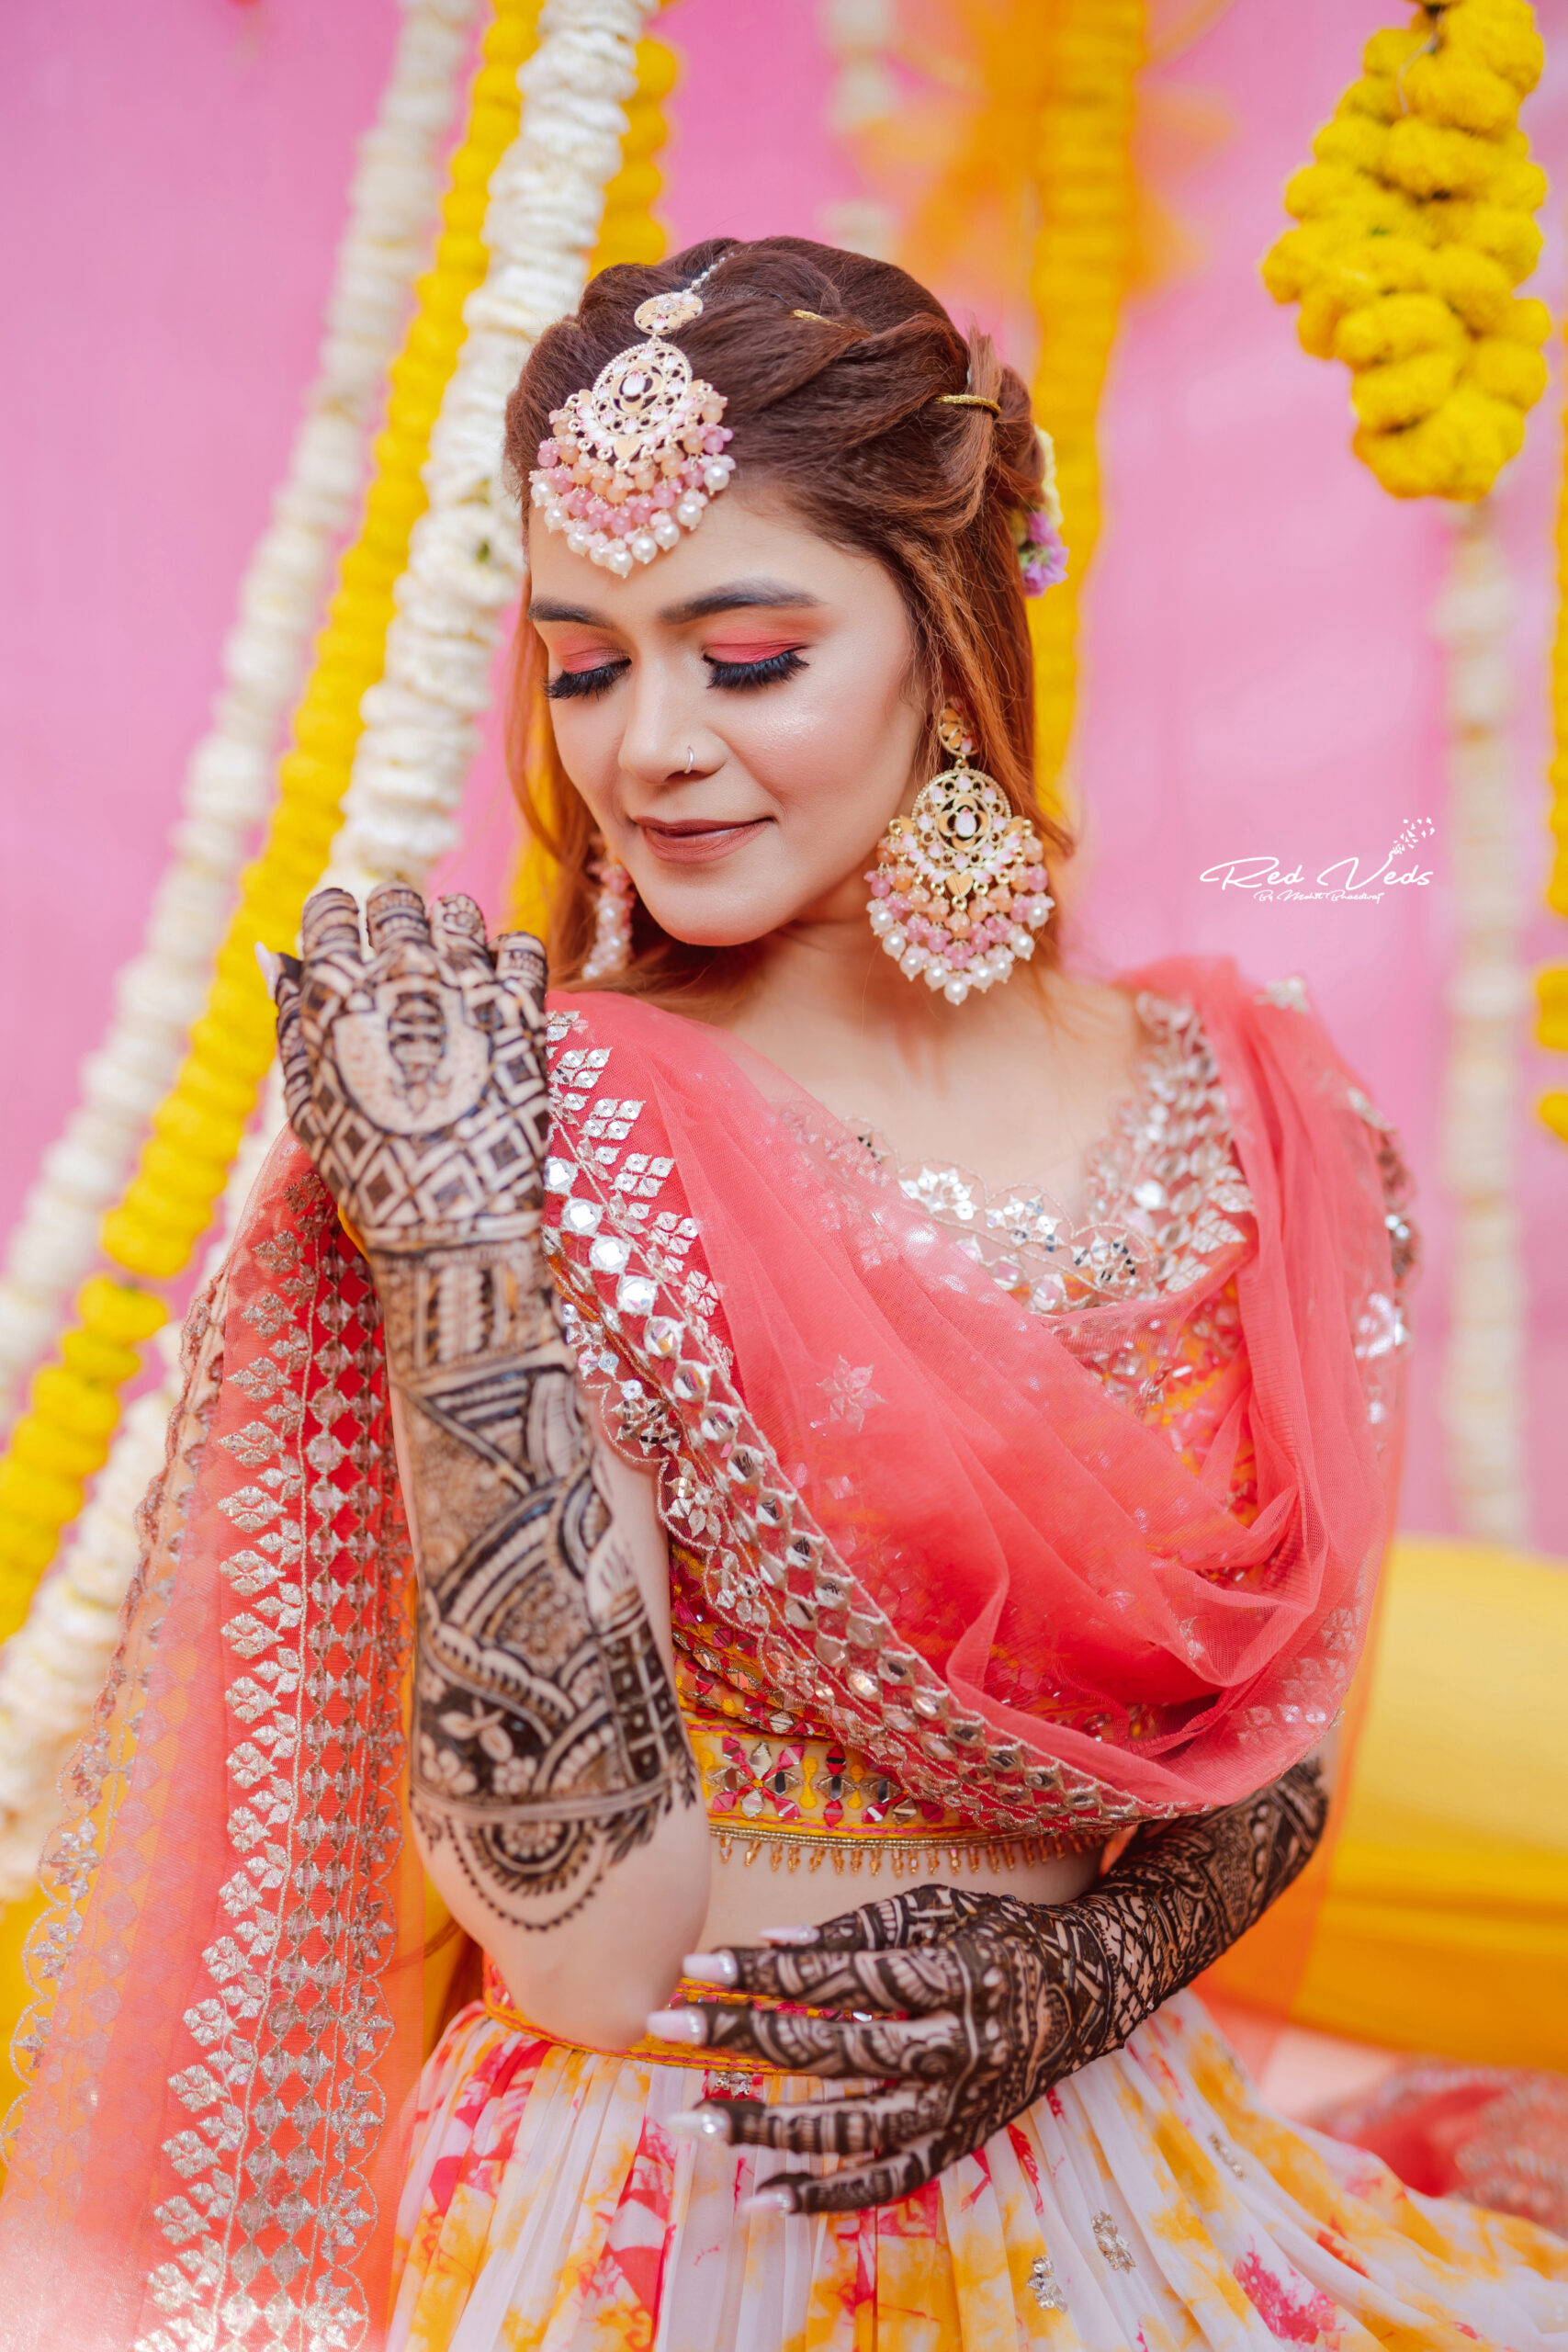 Bridal mehndi ceremony photoshoot in group poses idea/Bridal mehndi  photography idea photos/fashion - YouTube